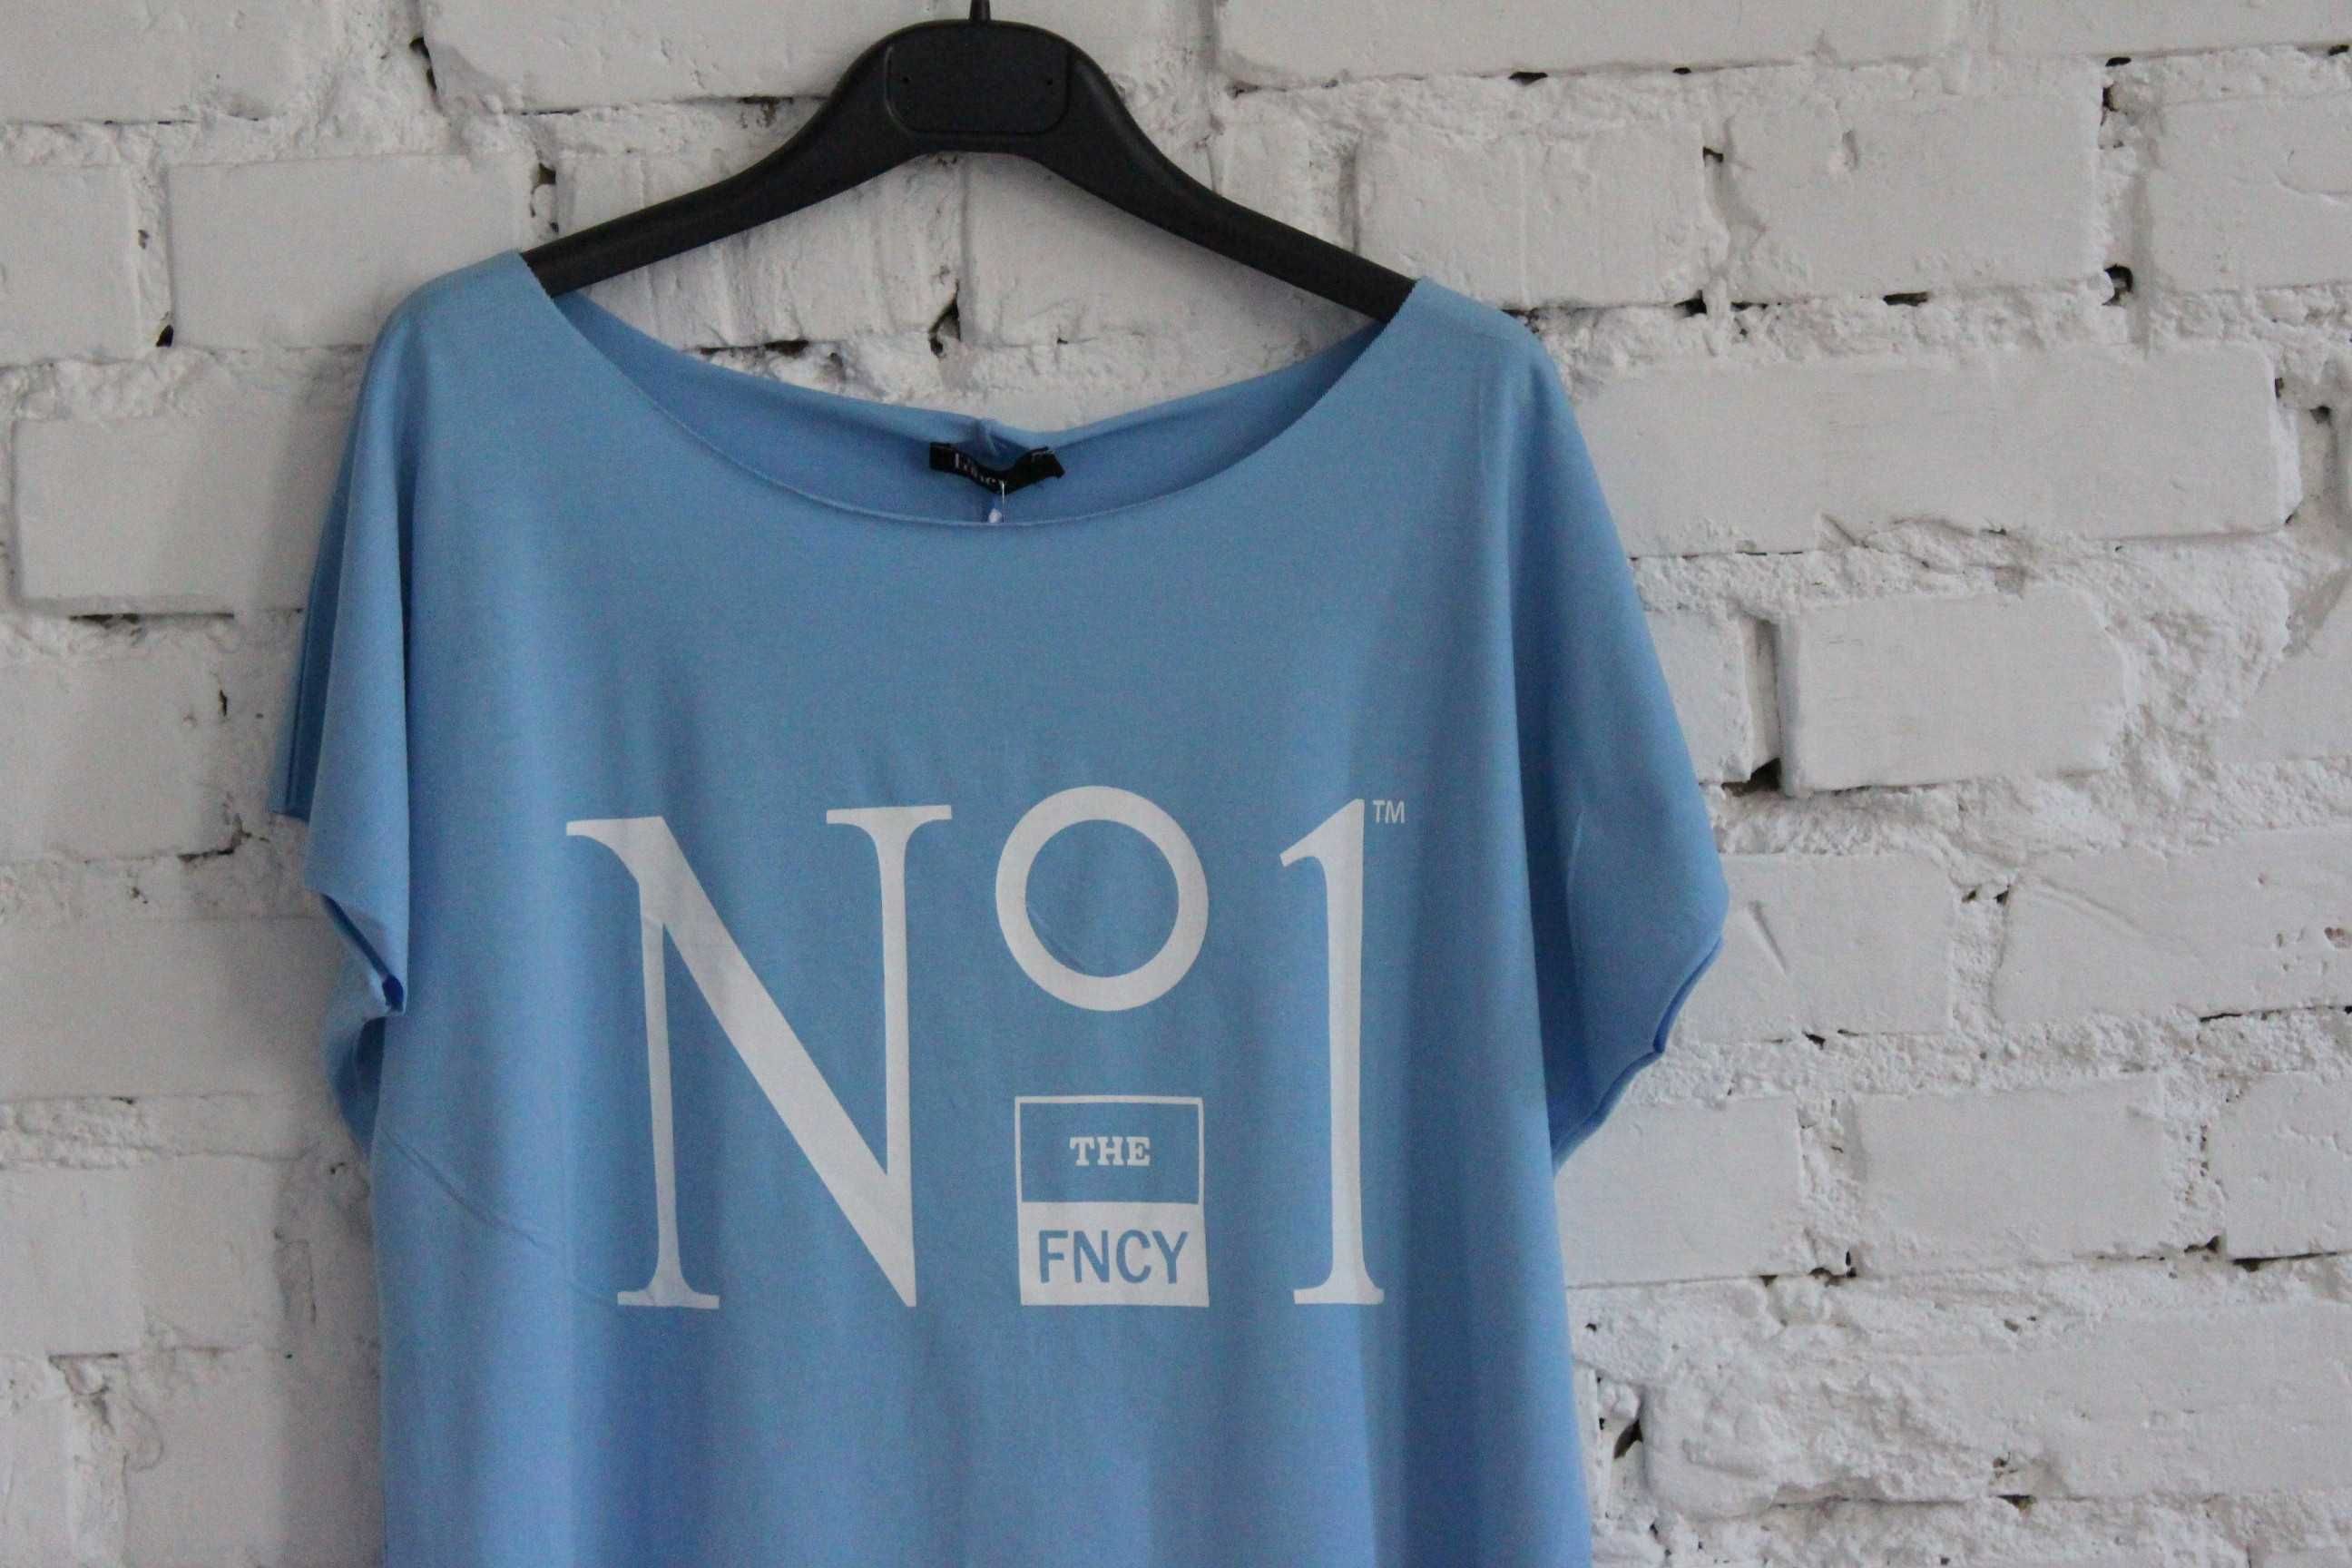 Mega koszulka The Fancy niebieska No1 r.S-M-L